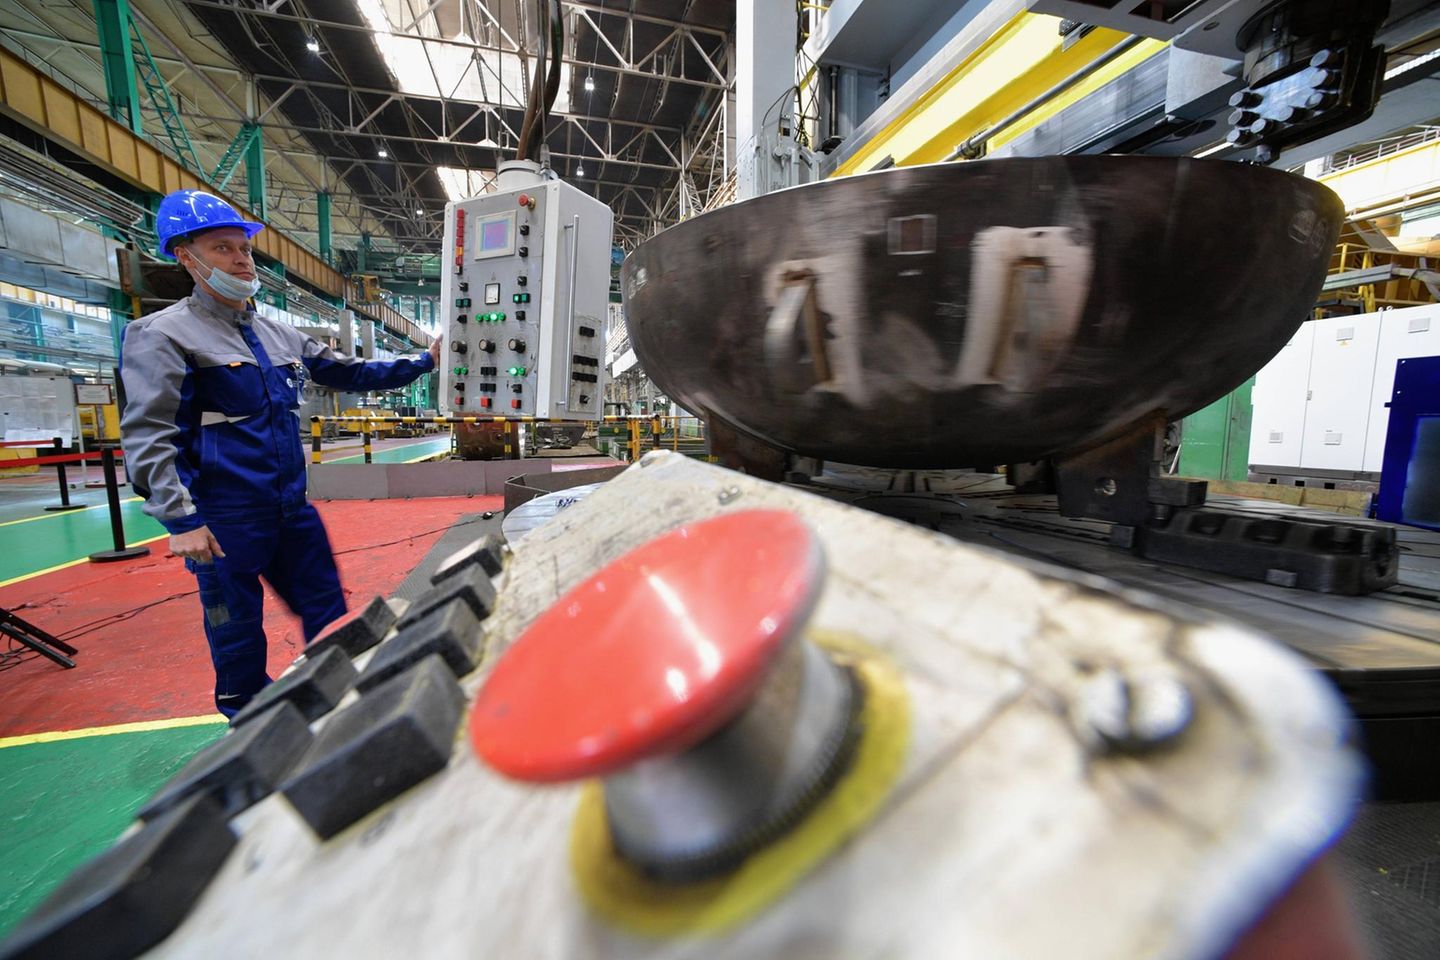 Maschinenbaufabrik bei Sankt Petersburg: Industrie hat „gigantische Probleme“